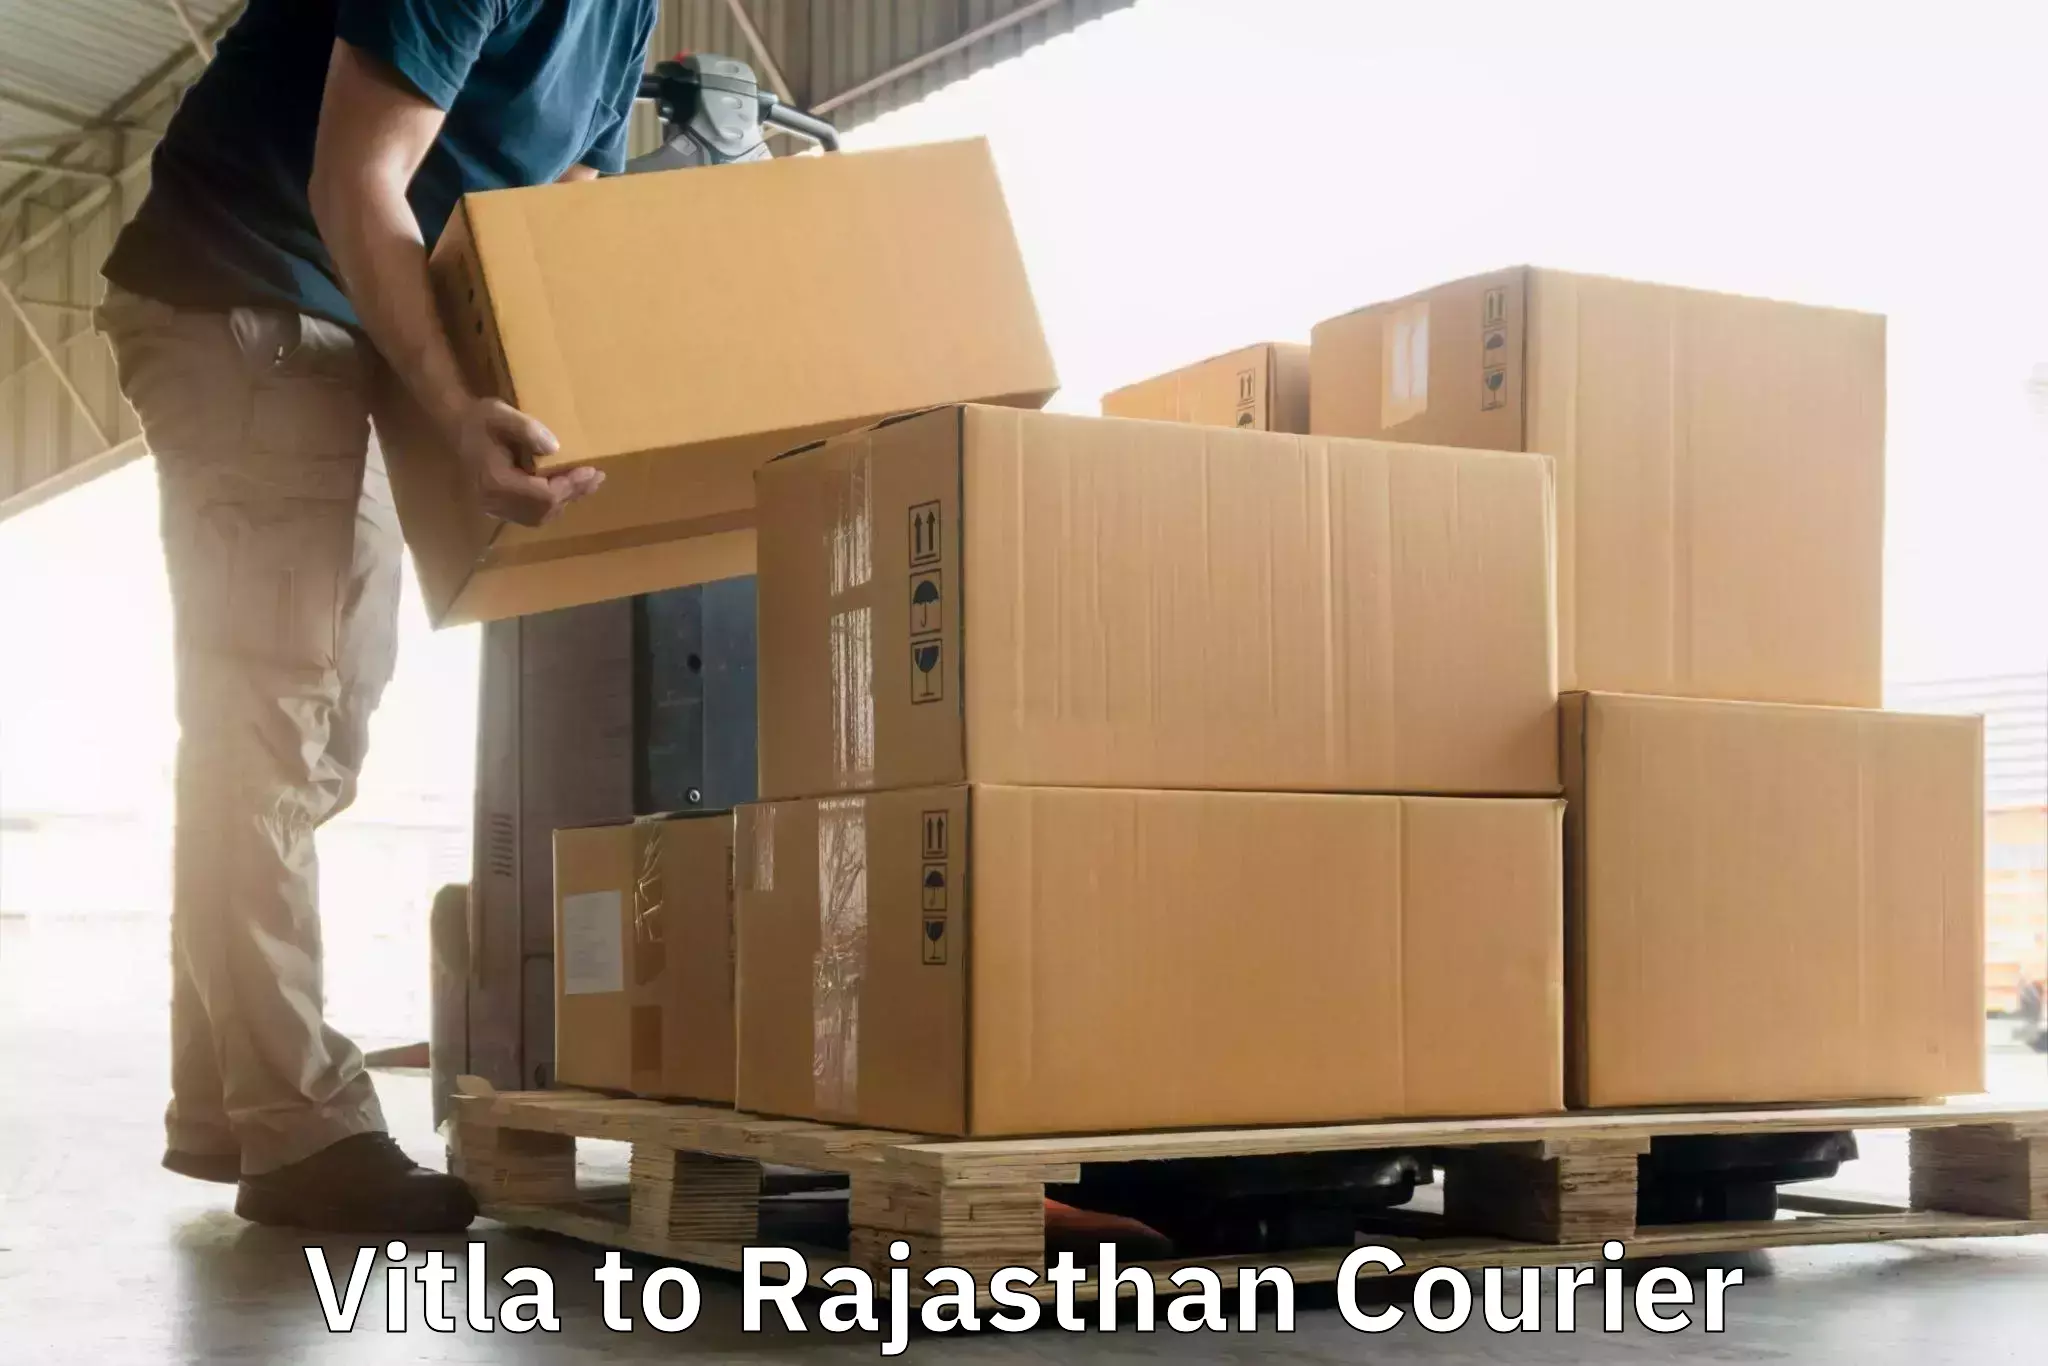 Efficient parcel transport in Vitla to Rajasthan